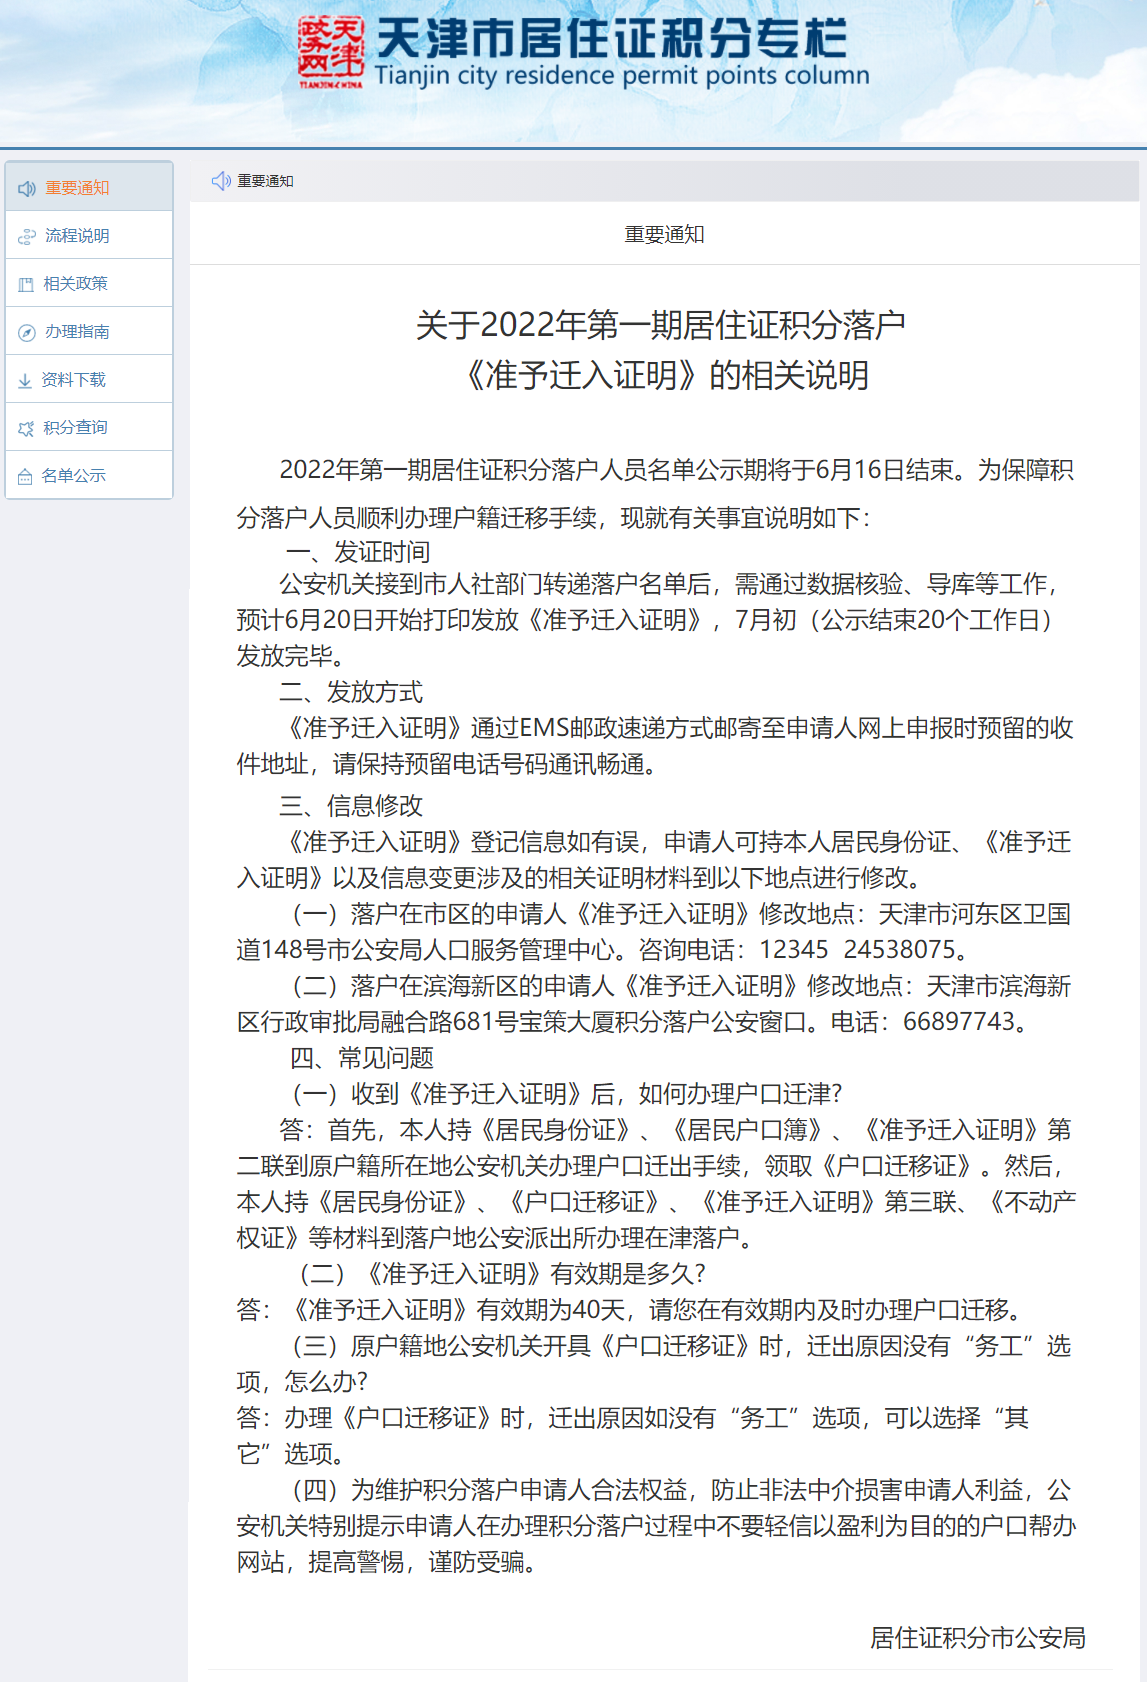 2022年第一期天津津积分落户人员名单通知（准迁证说明）